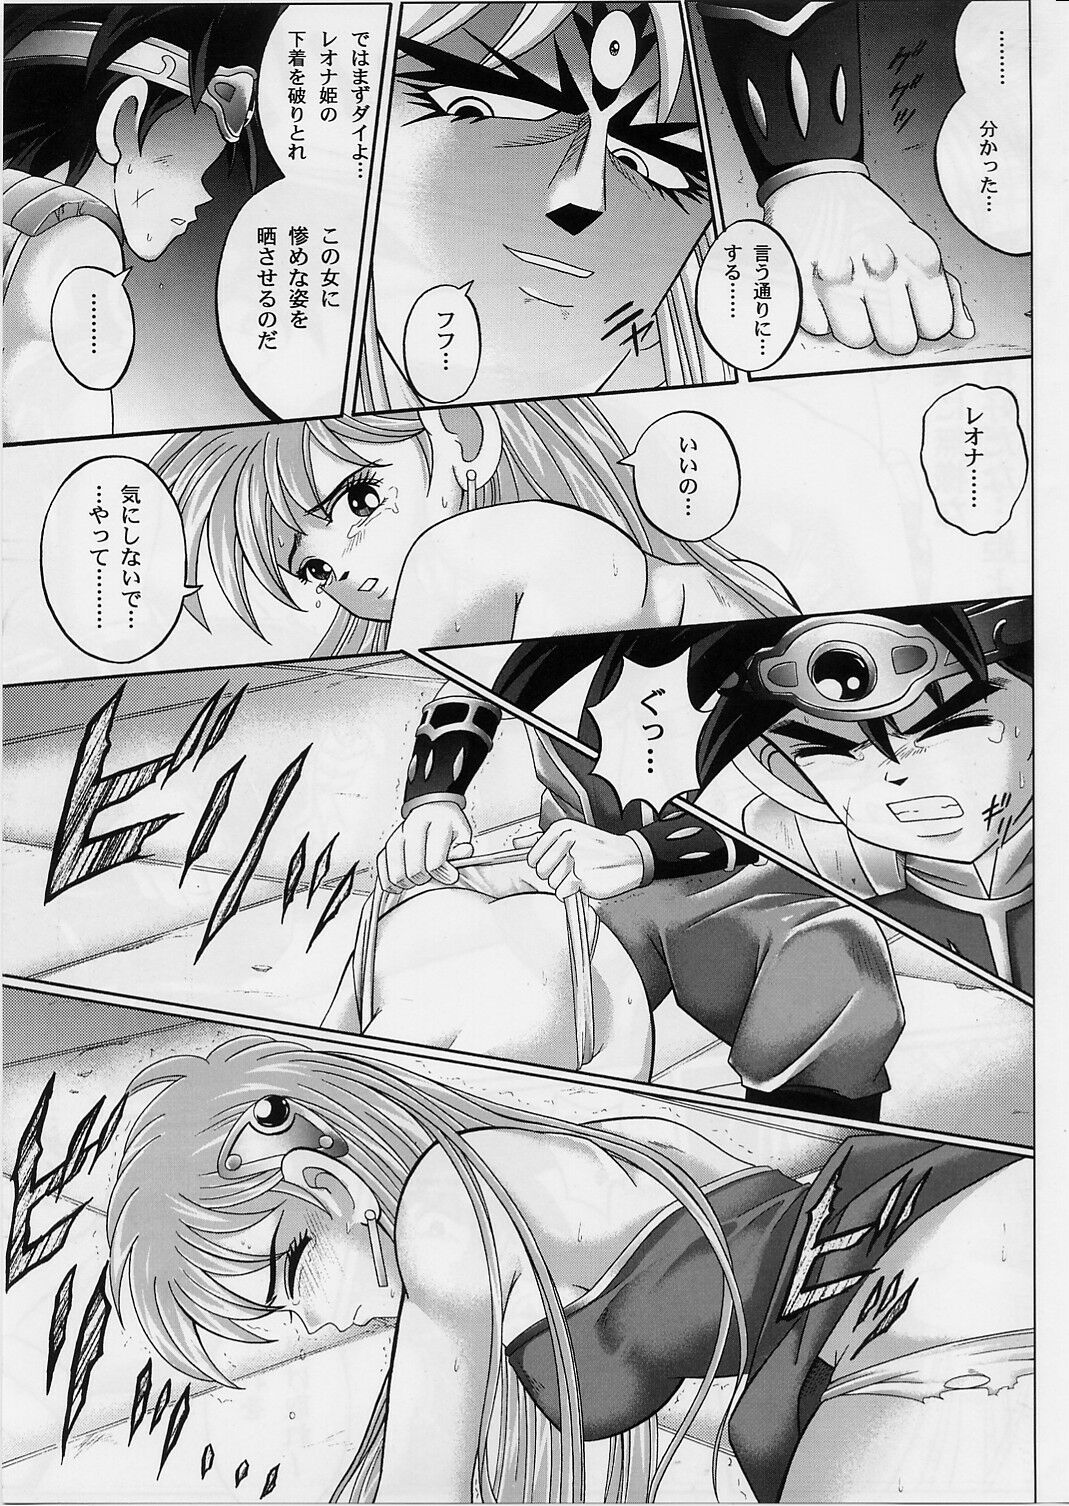 [Cyclone (Izumi, Reizei)] DIME ALLIANCE 2 (Dragon Quest Dai no Daibouken) page 10 full